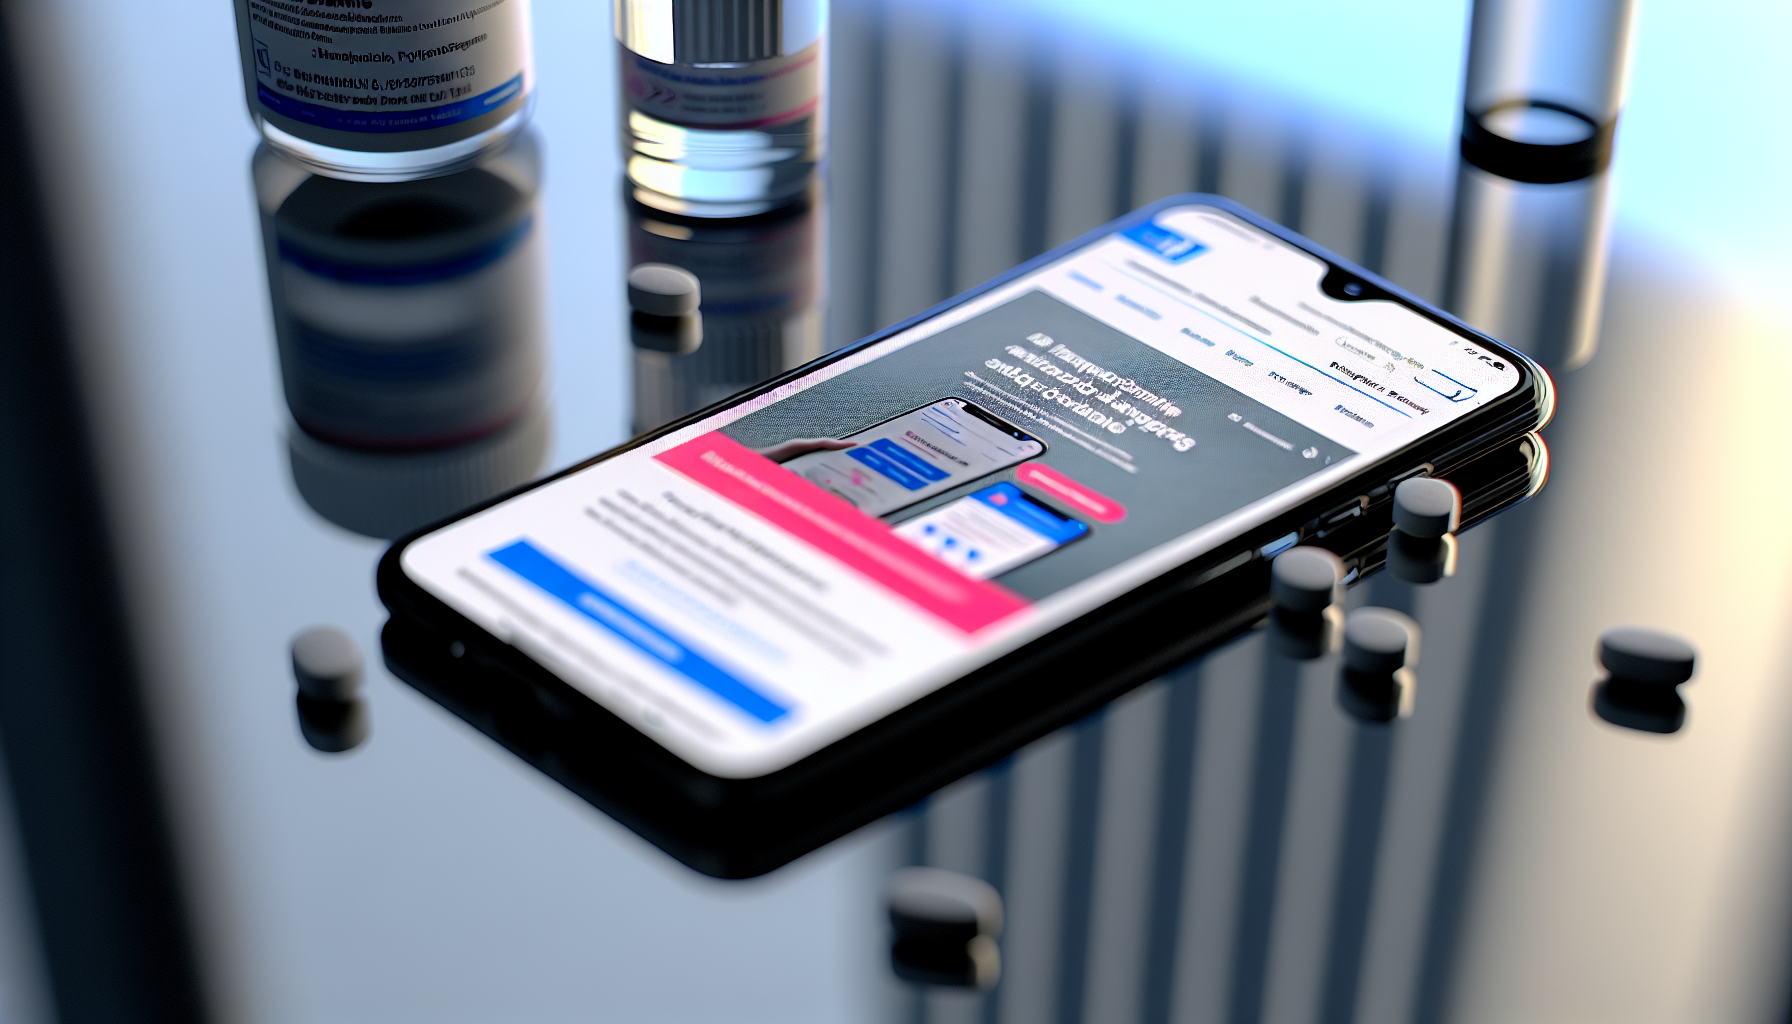 Mobile optimization for pharmaceutical brands